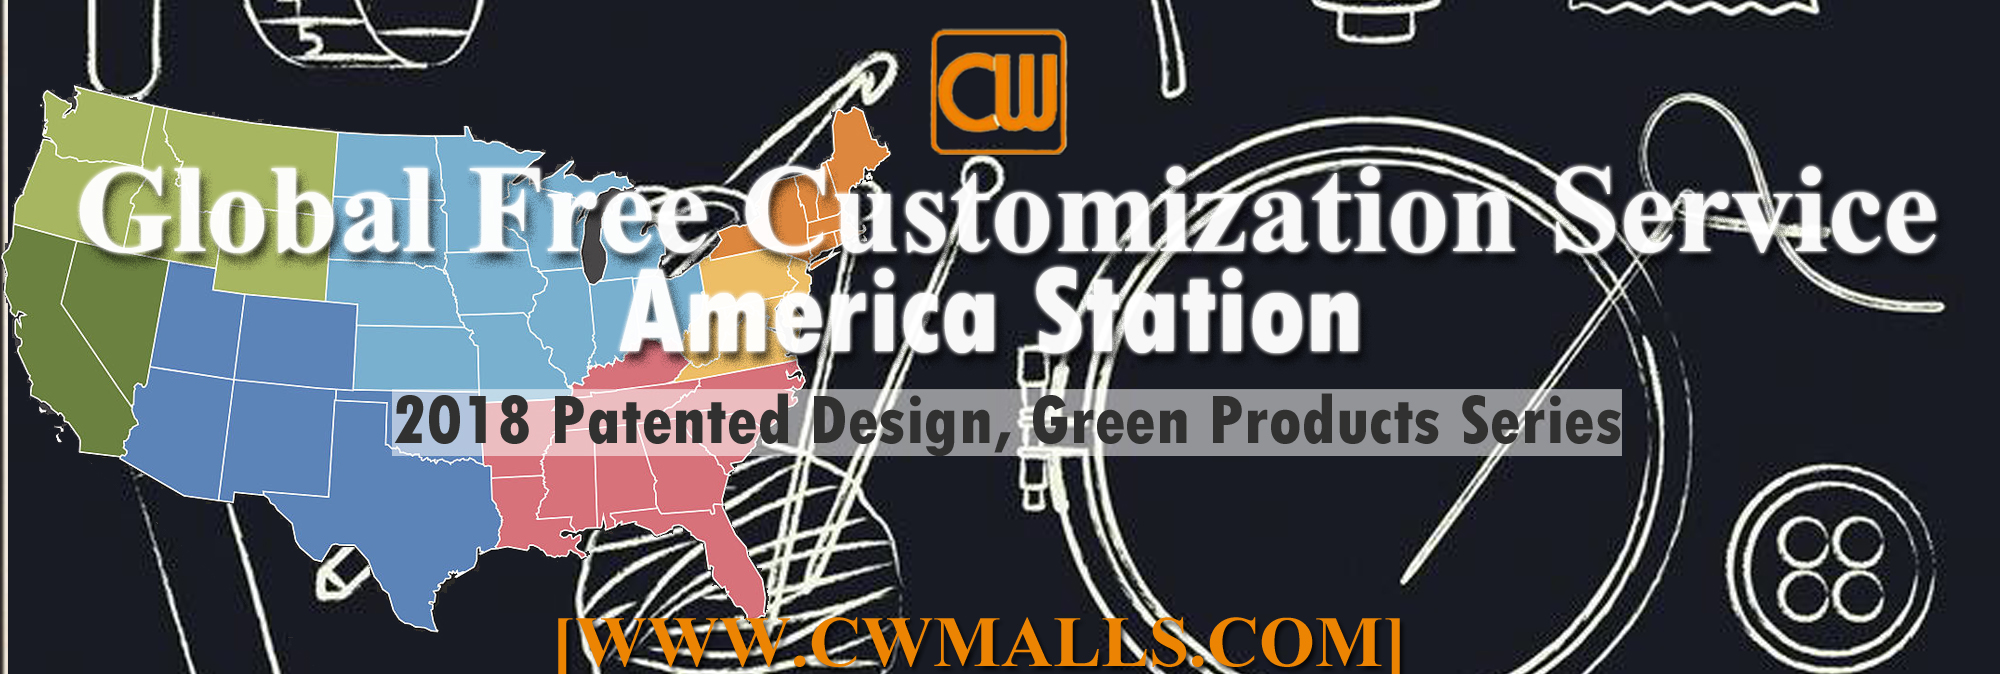 CWMALLS Global Free Customization Service America Station